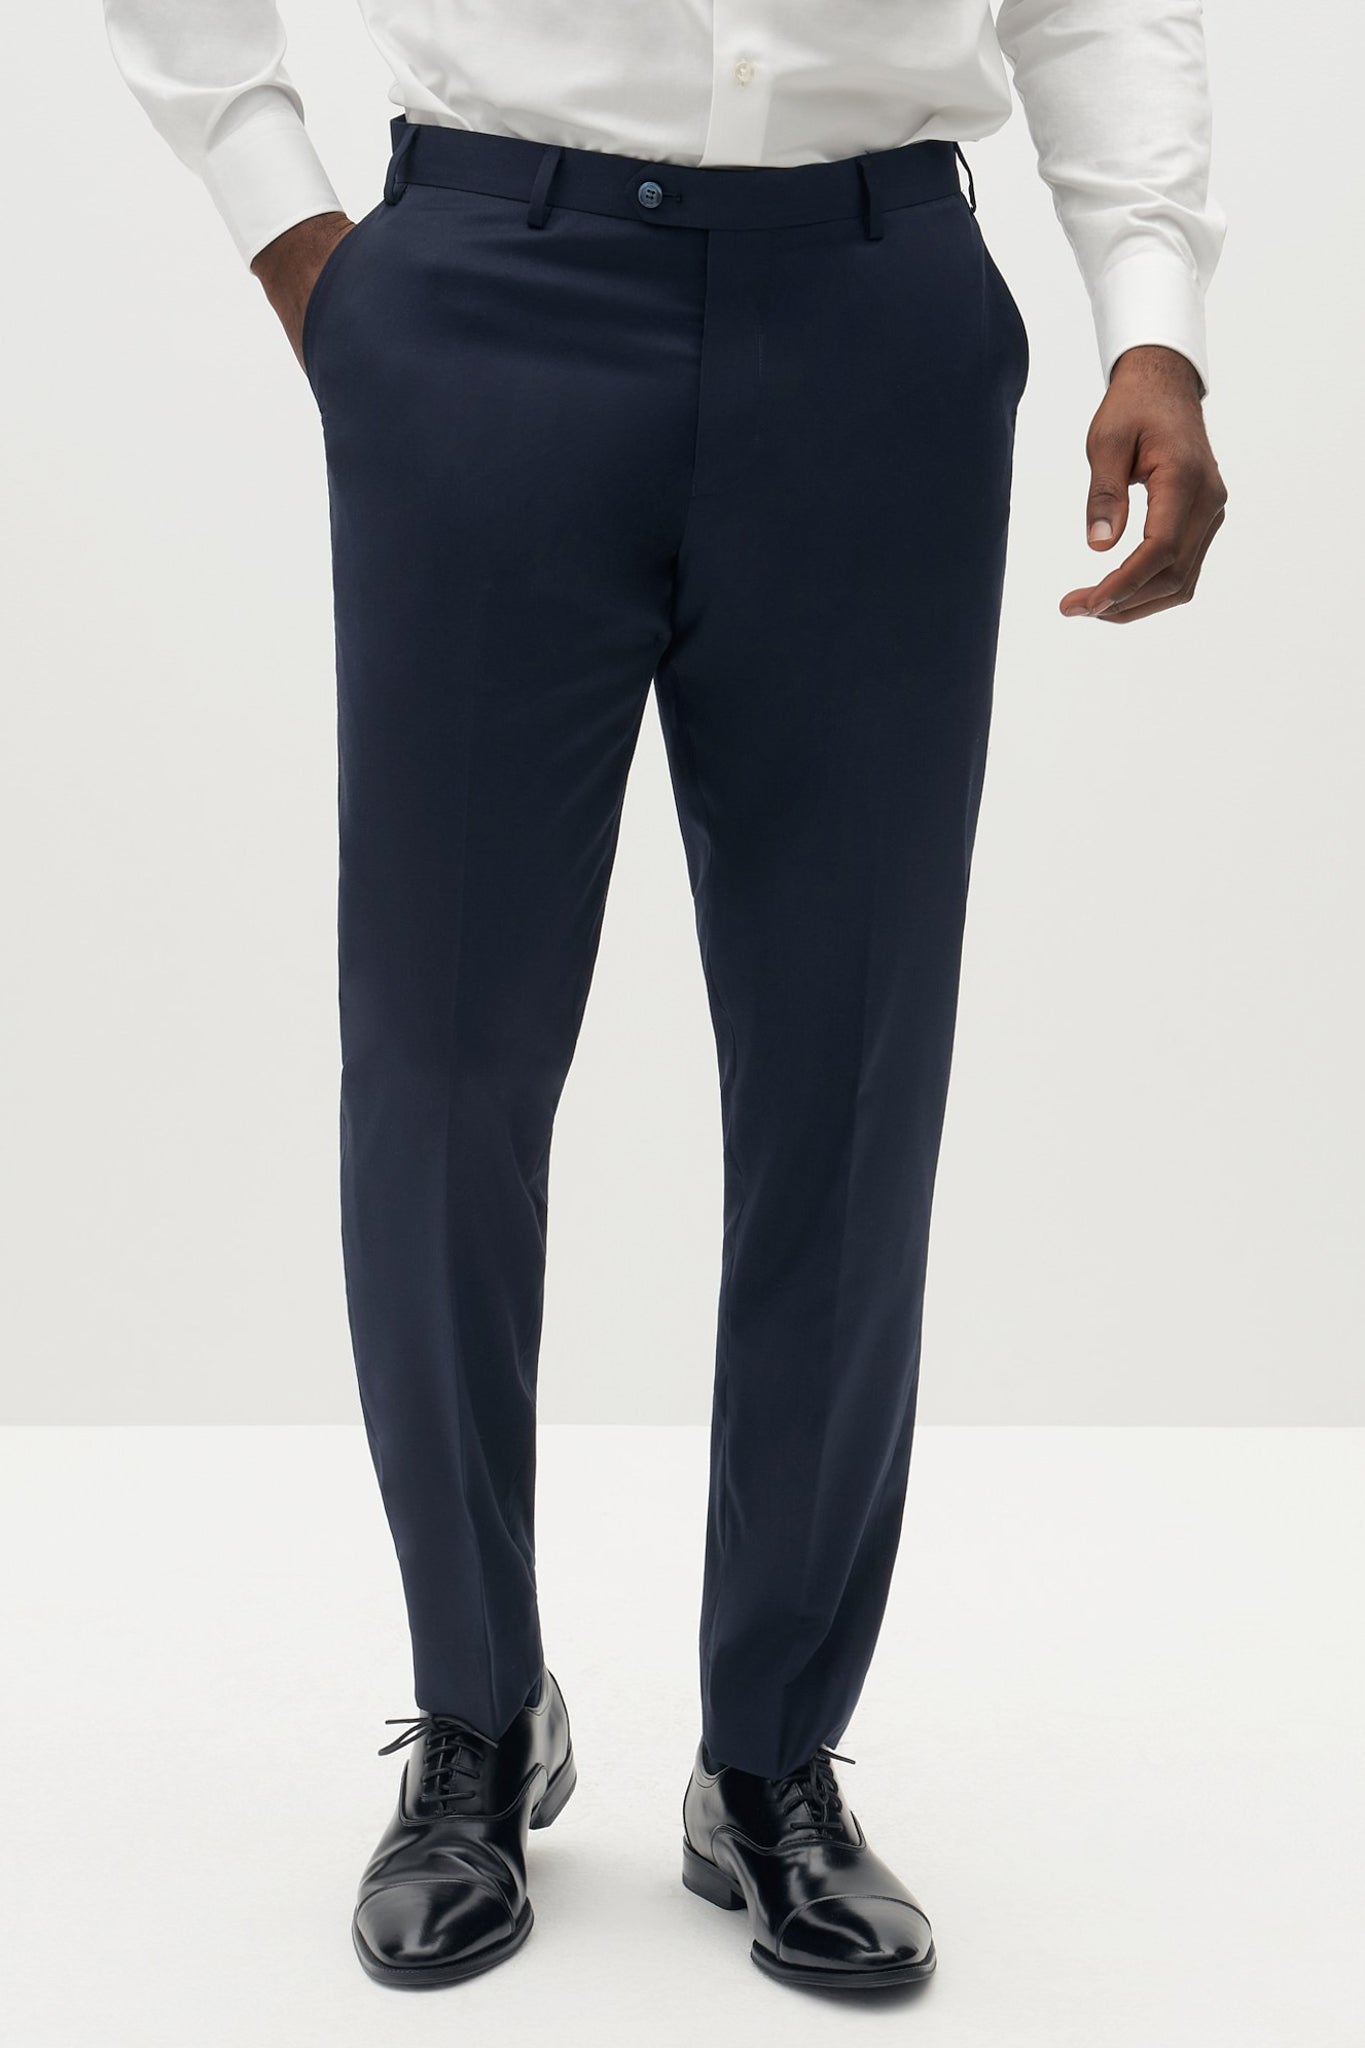 Men's Suit Trousers, Men's Suit Separates